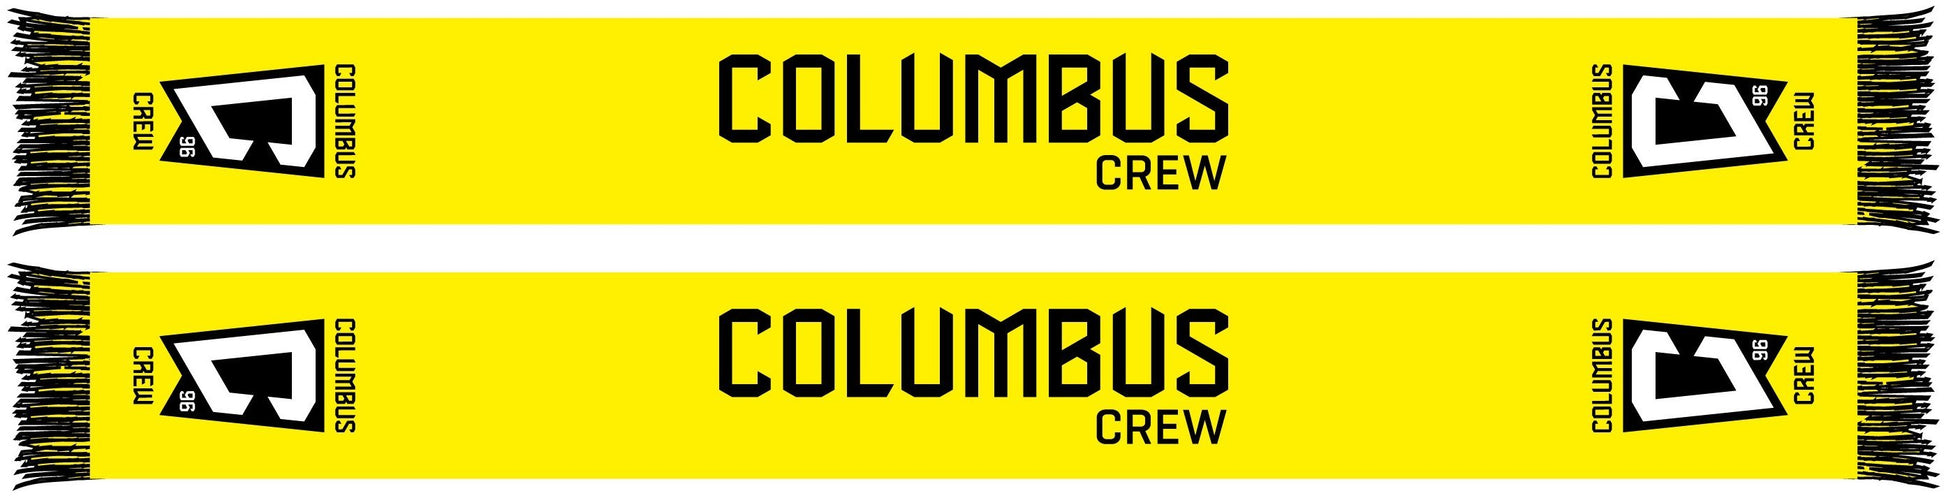 Columbus Crew Scarf - Solid